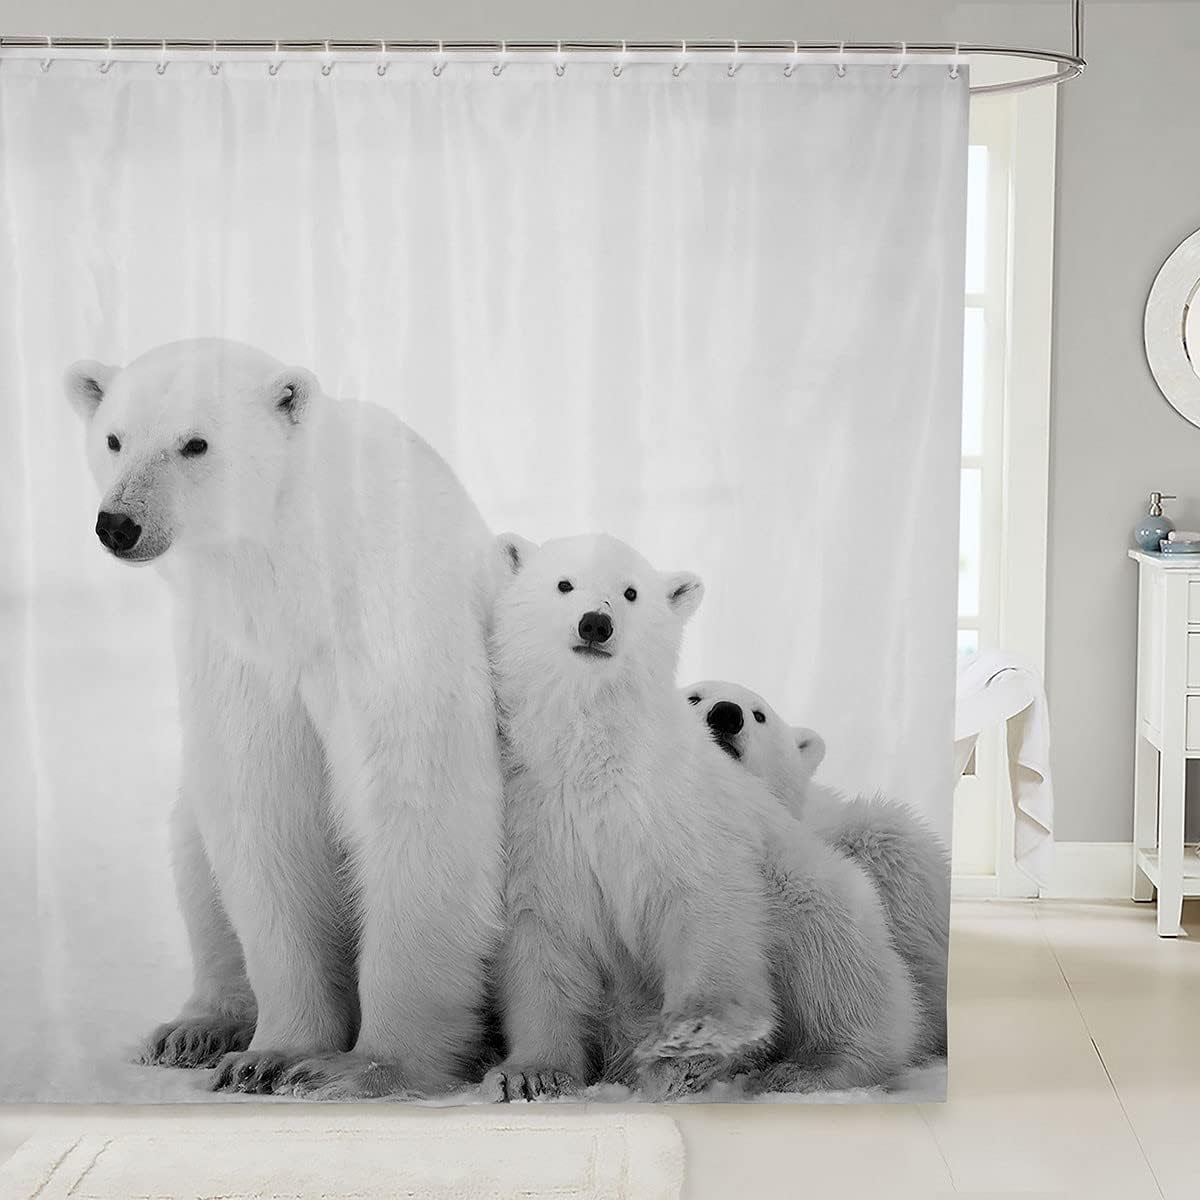 SPXUBZ Polar Bear Shower Curtain Polar Bear Family Bathroom Shower ...